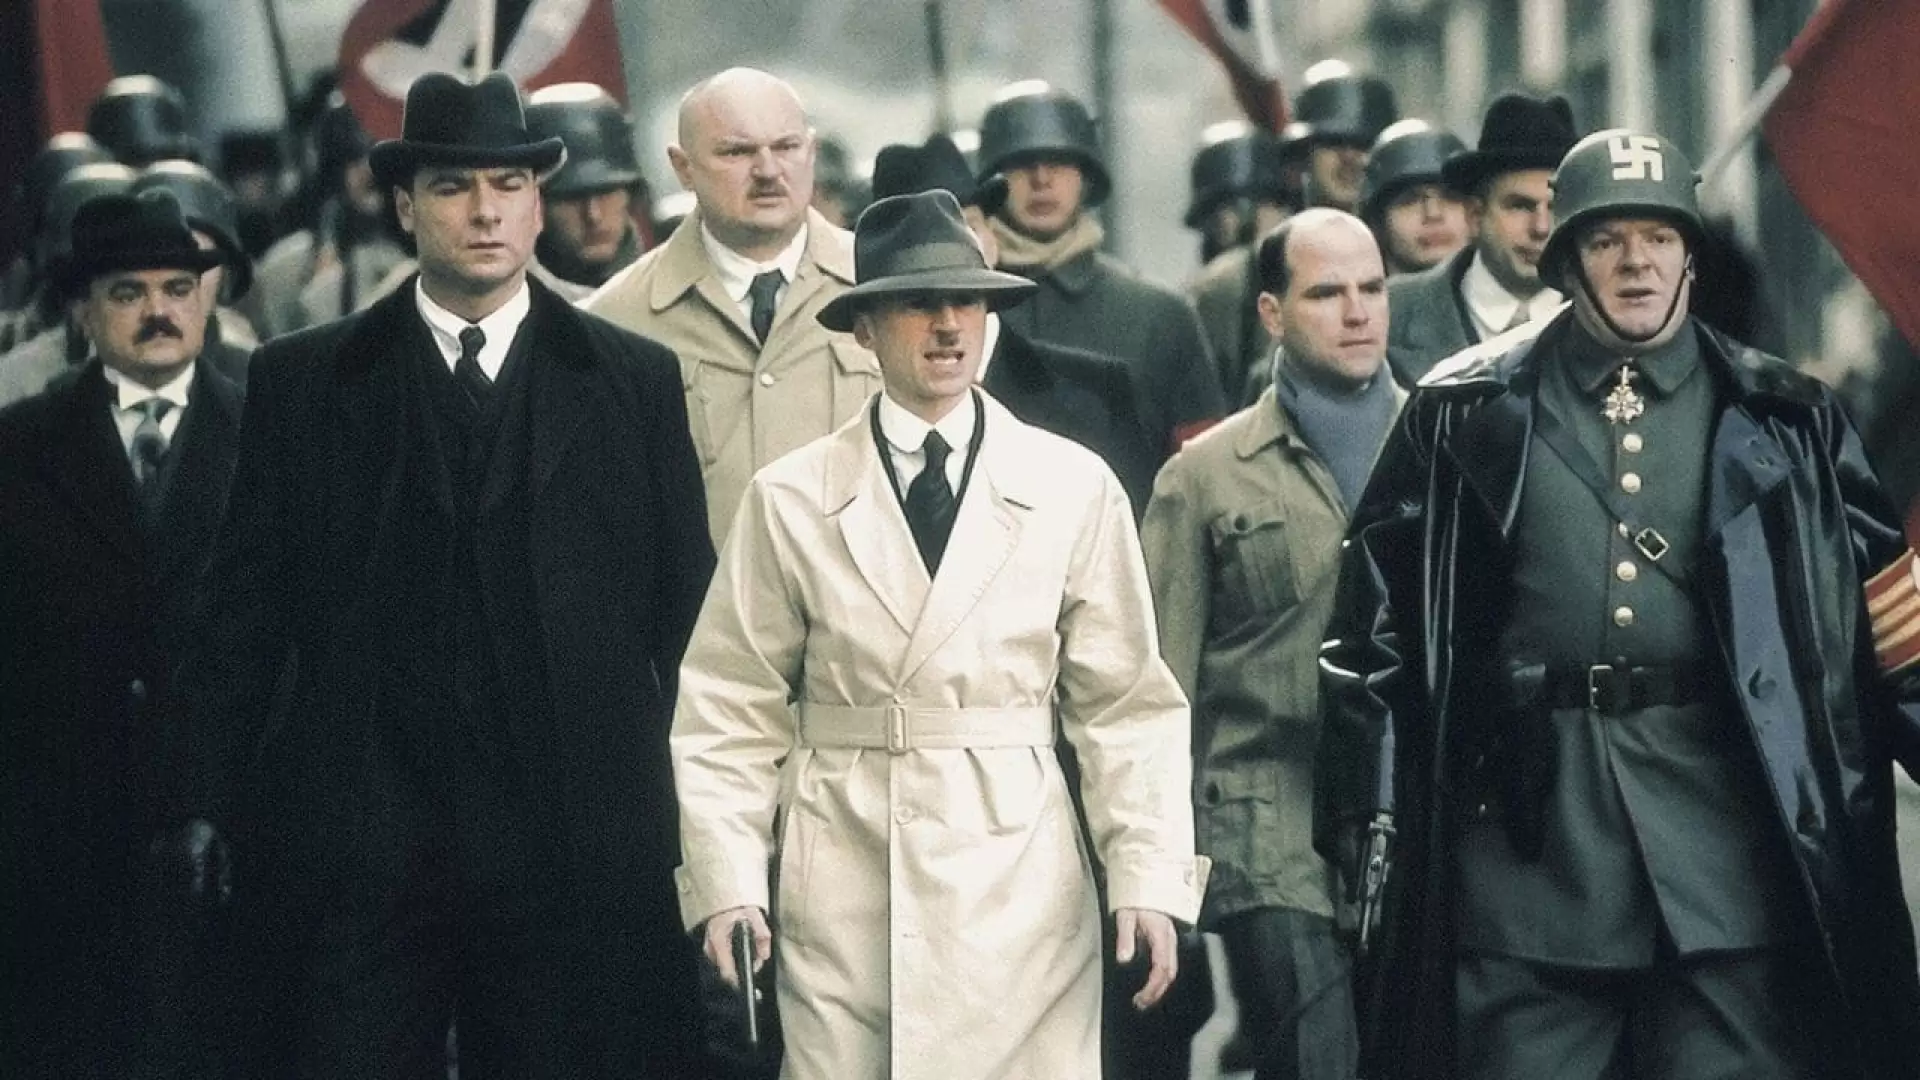 دانلود فیلم Hitler: The Rise of Evil 2003 با زیرنویس فارسی